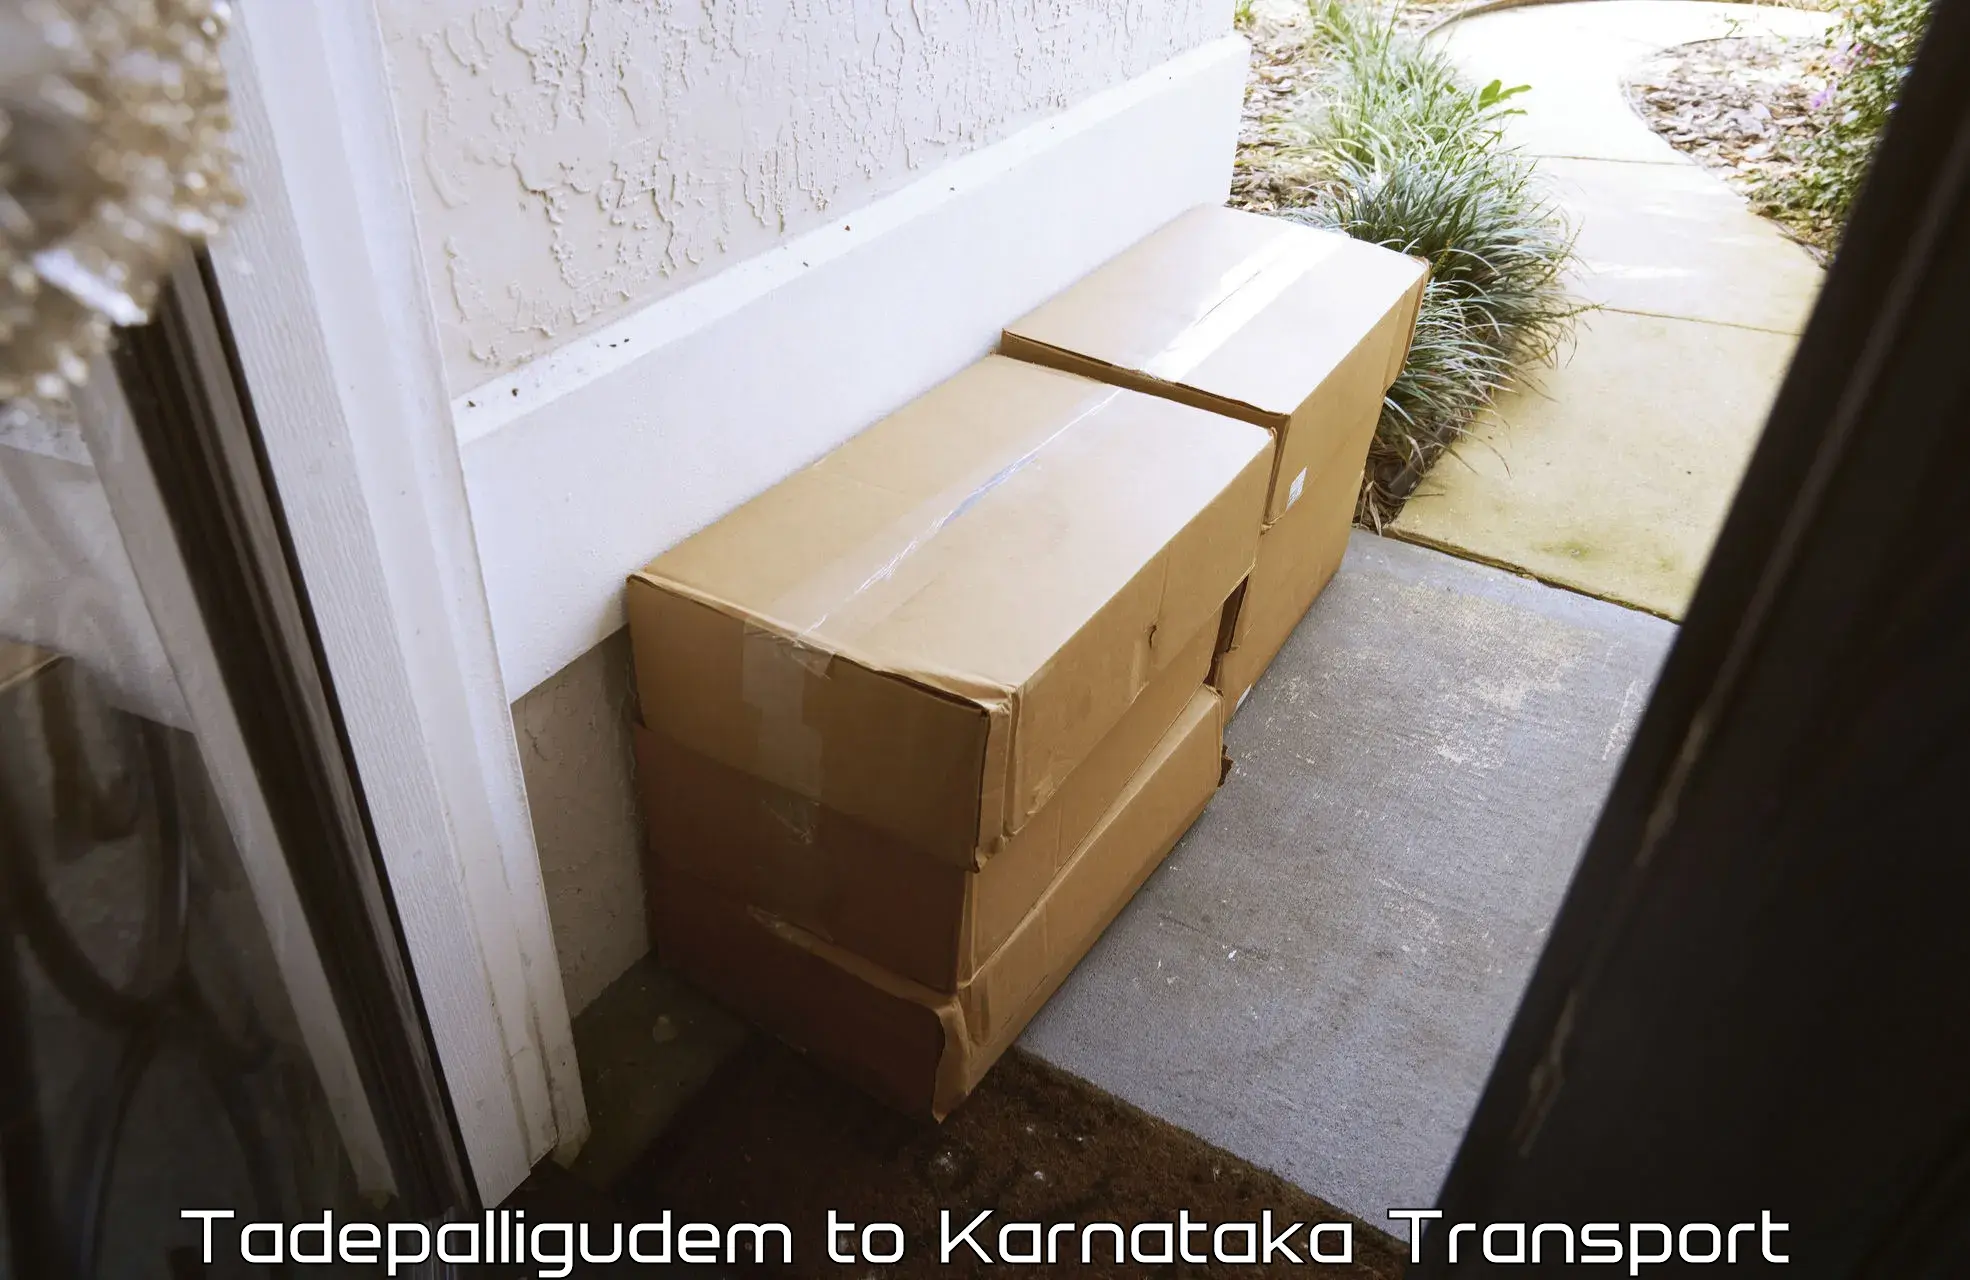 Goods transport services Tadepalligudem to Kodagu